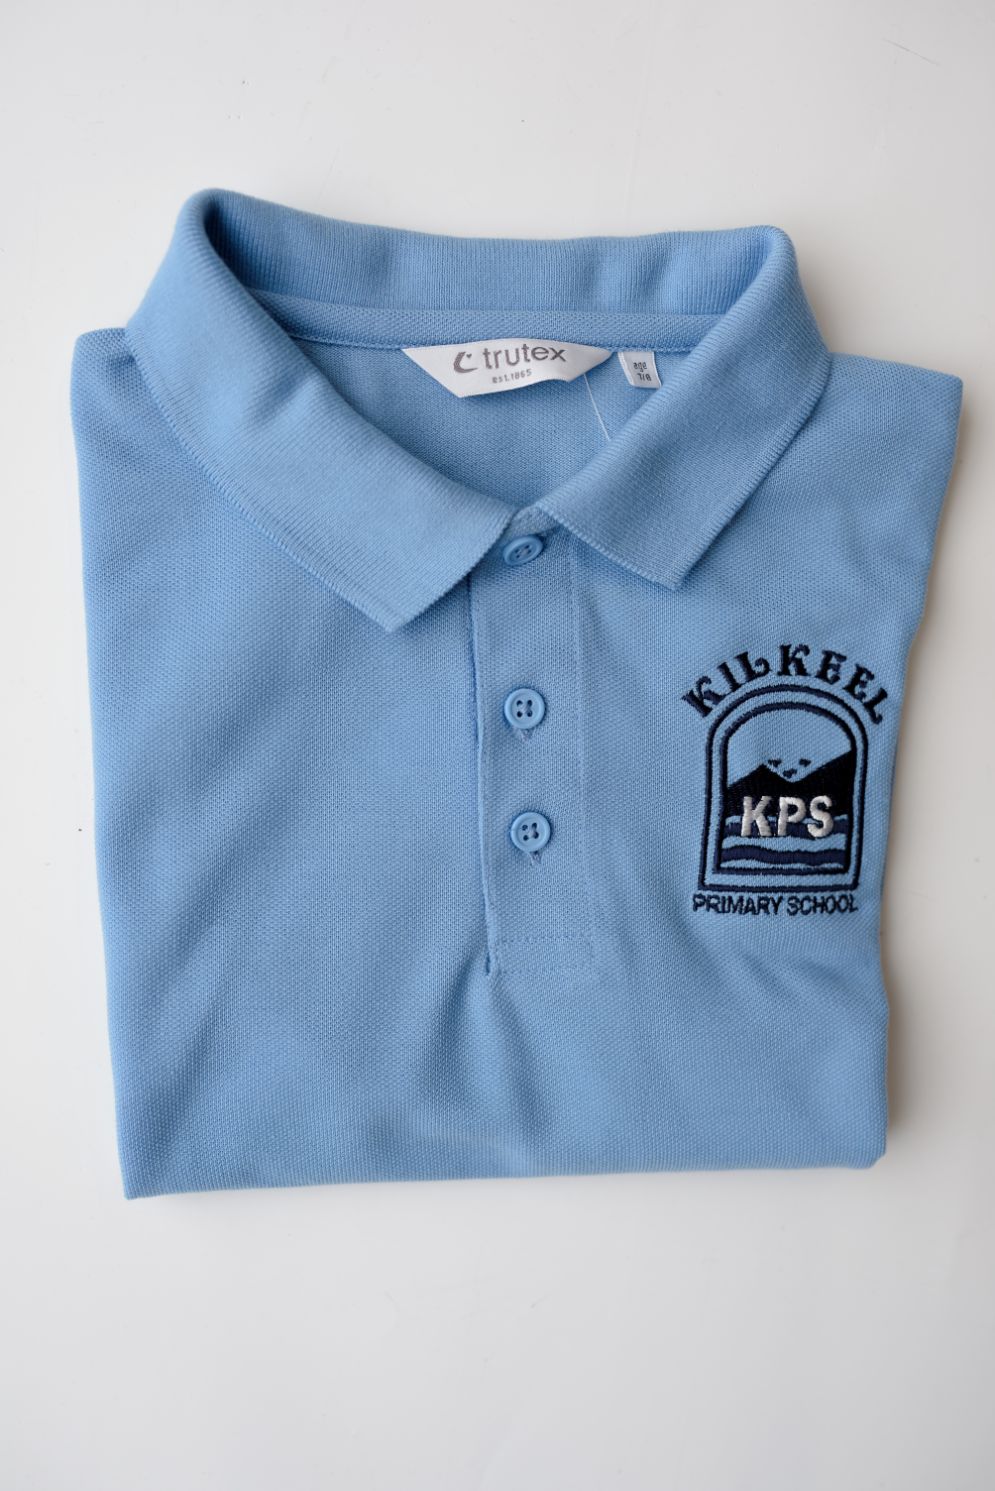 Kilkeel Primary School Trutex blue polo shirt